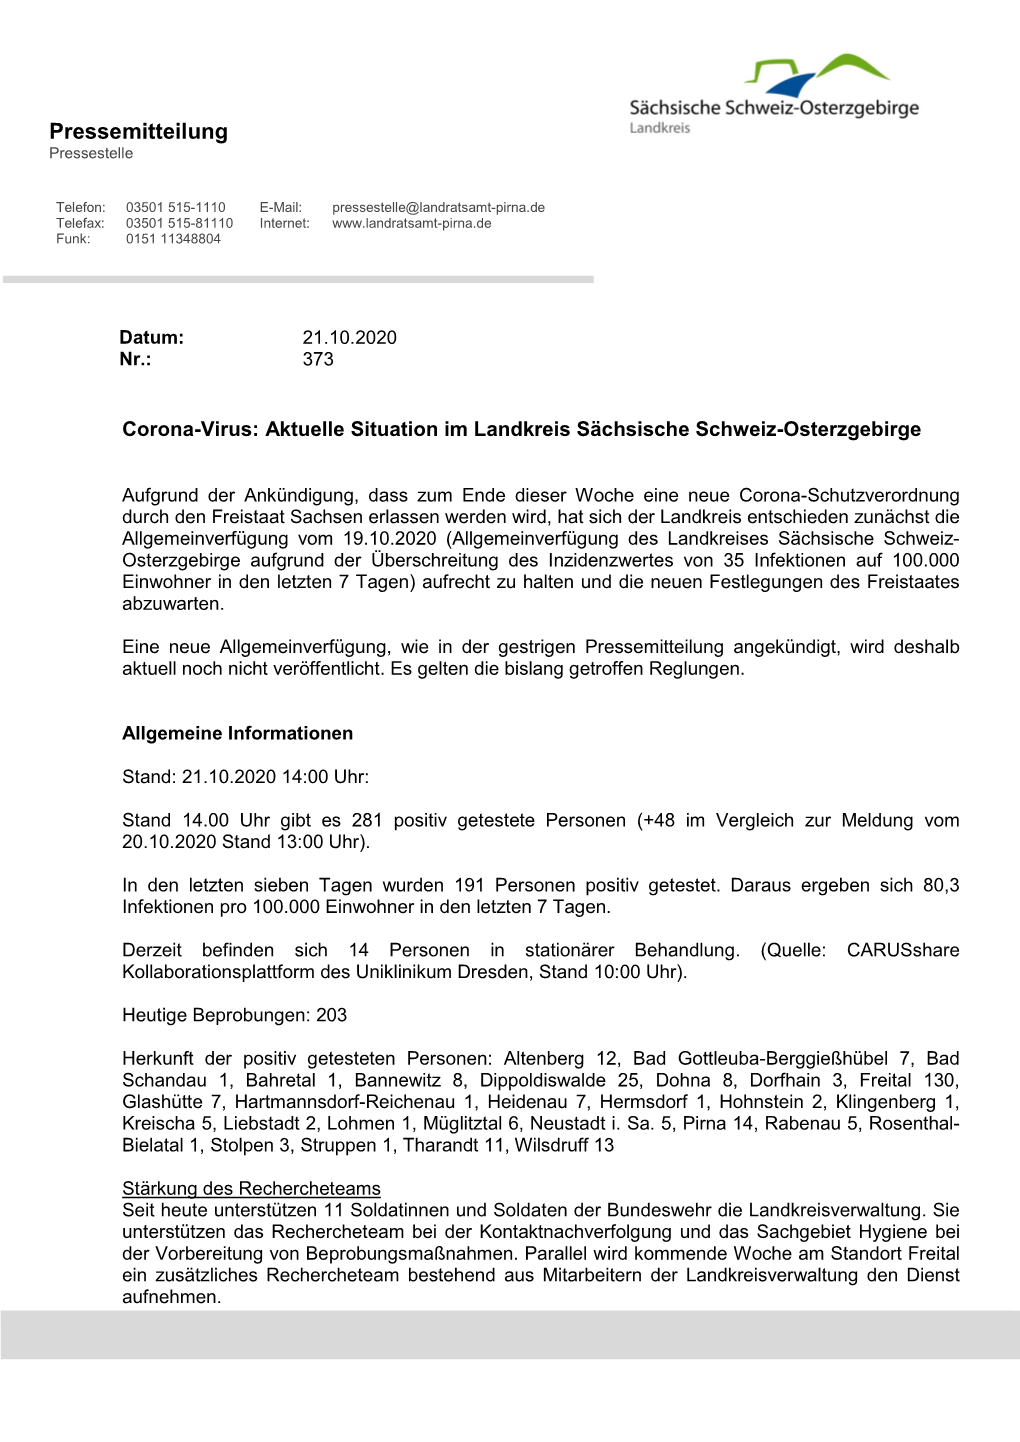 Aktuelle Situation Im Landkreis Sächsische Schweiz-Osterzgebirge